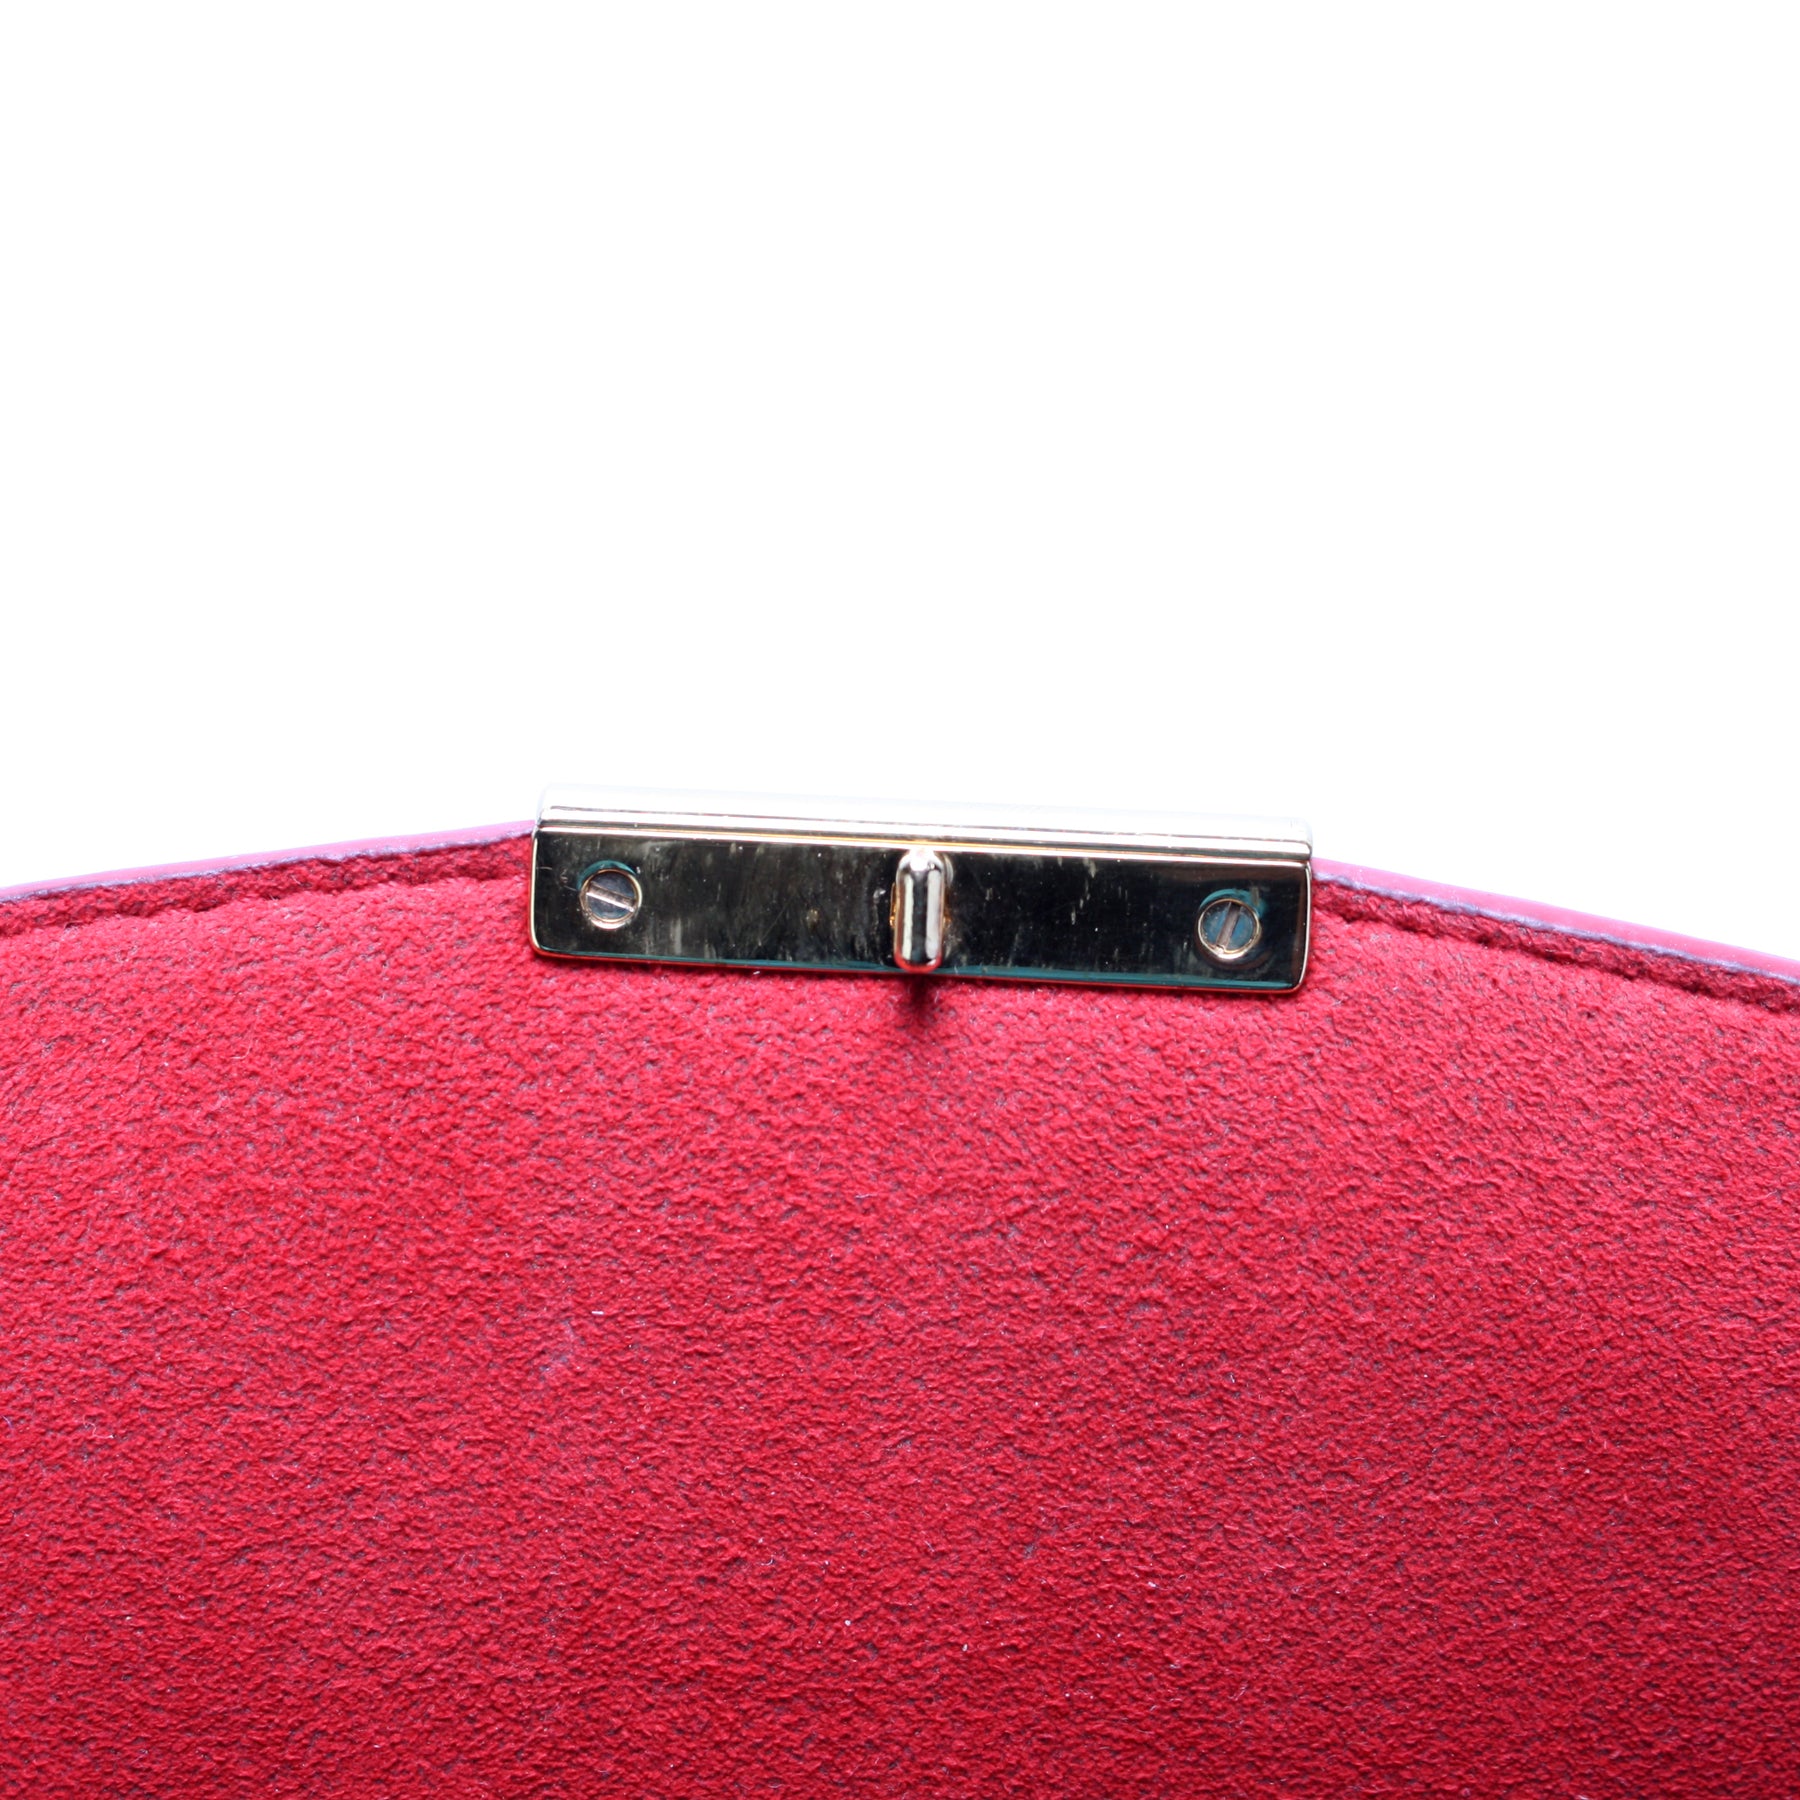 Caissa Wallet Damier Ebene – Keeks Designer Handbags